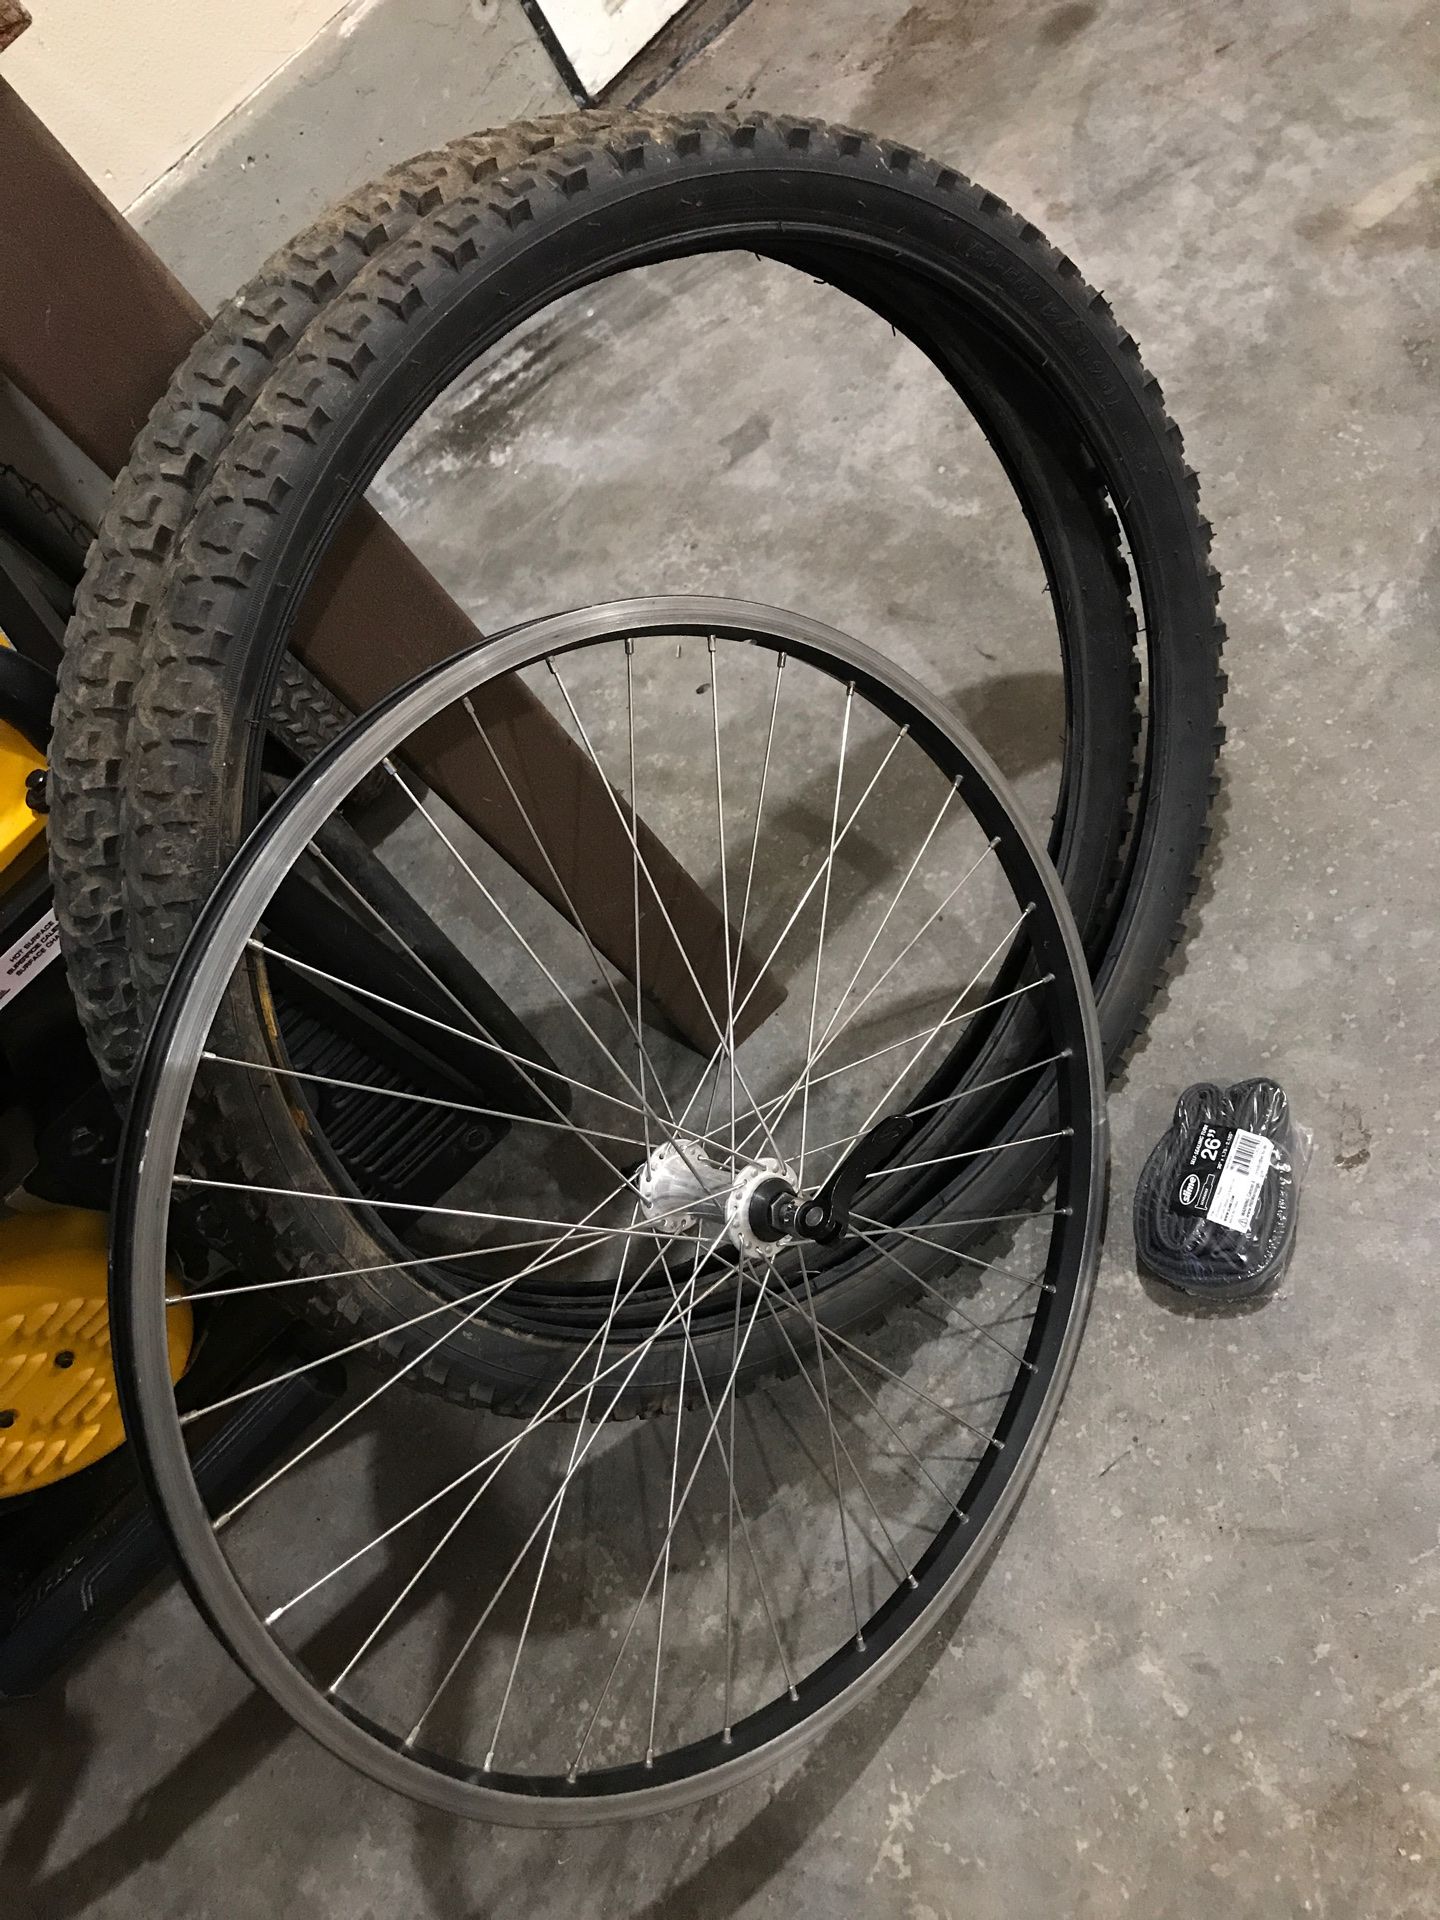 Bike 26” bike wheel tires and tube